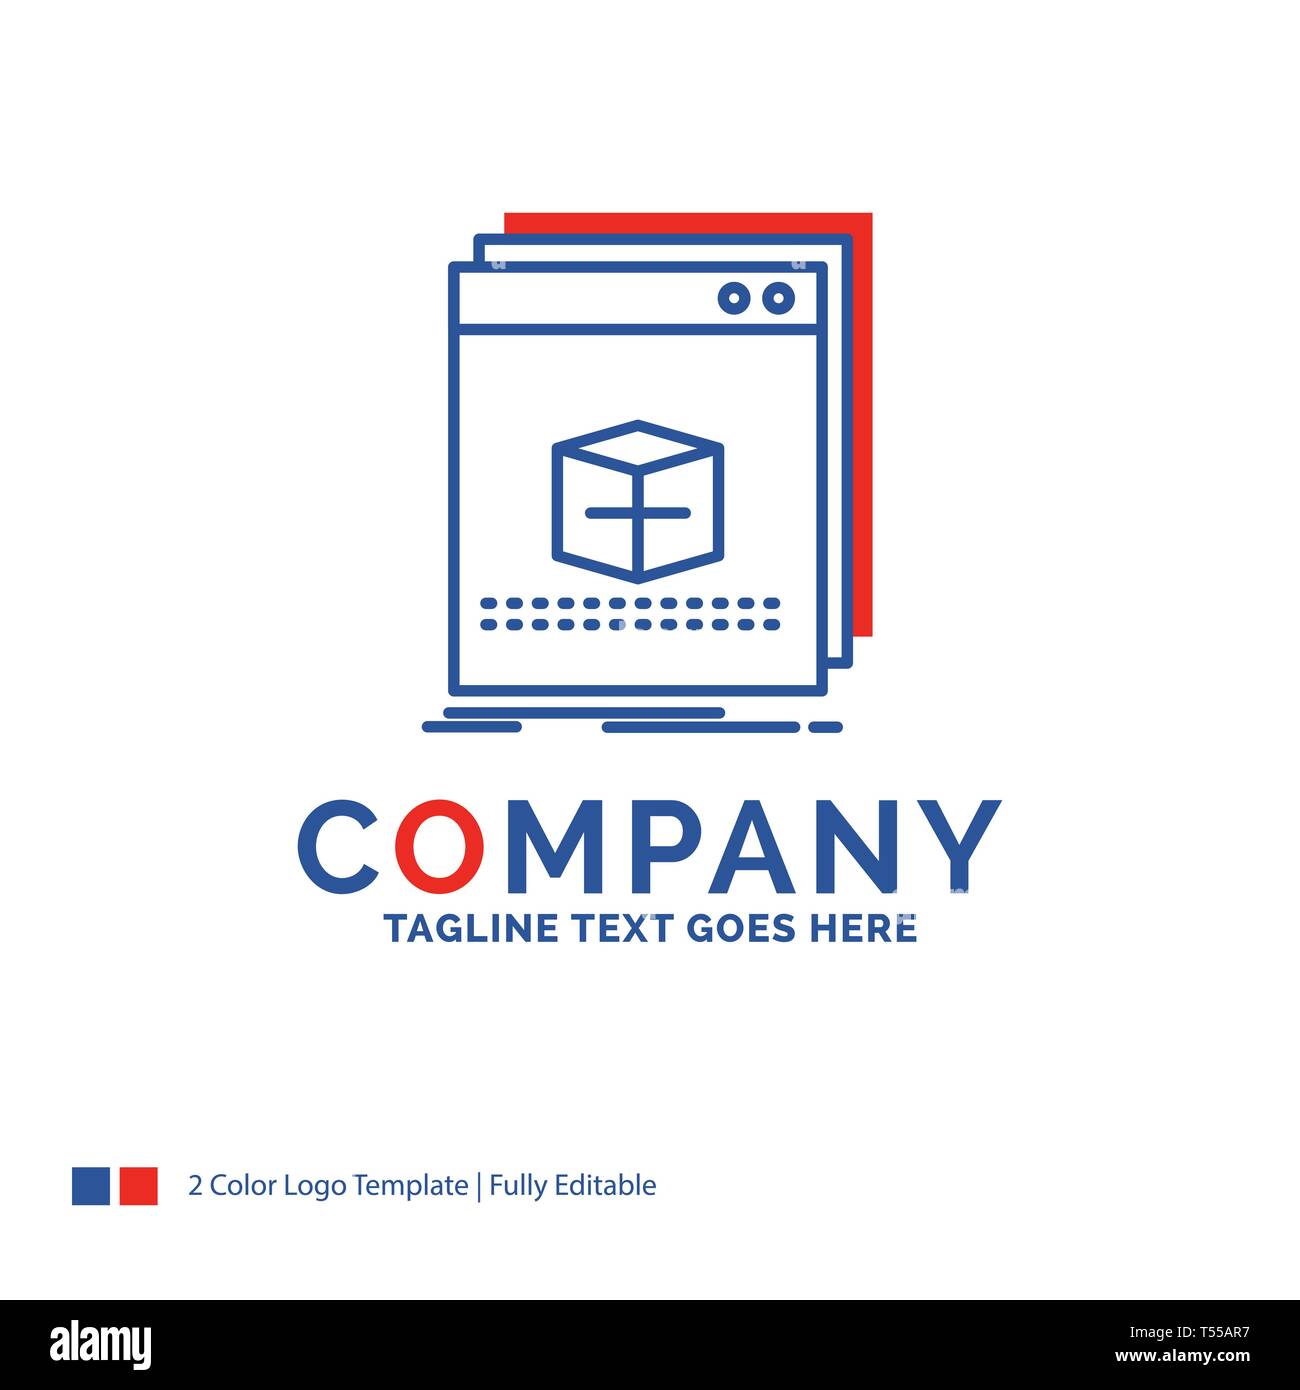 software company logo design